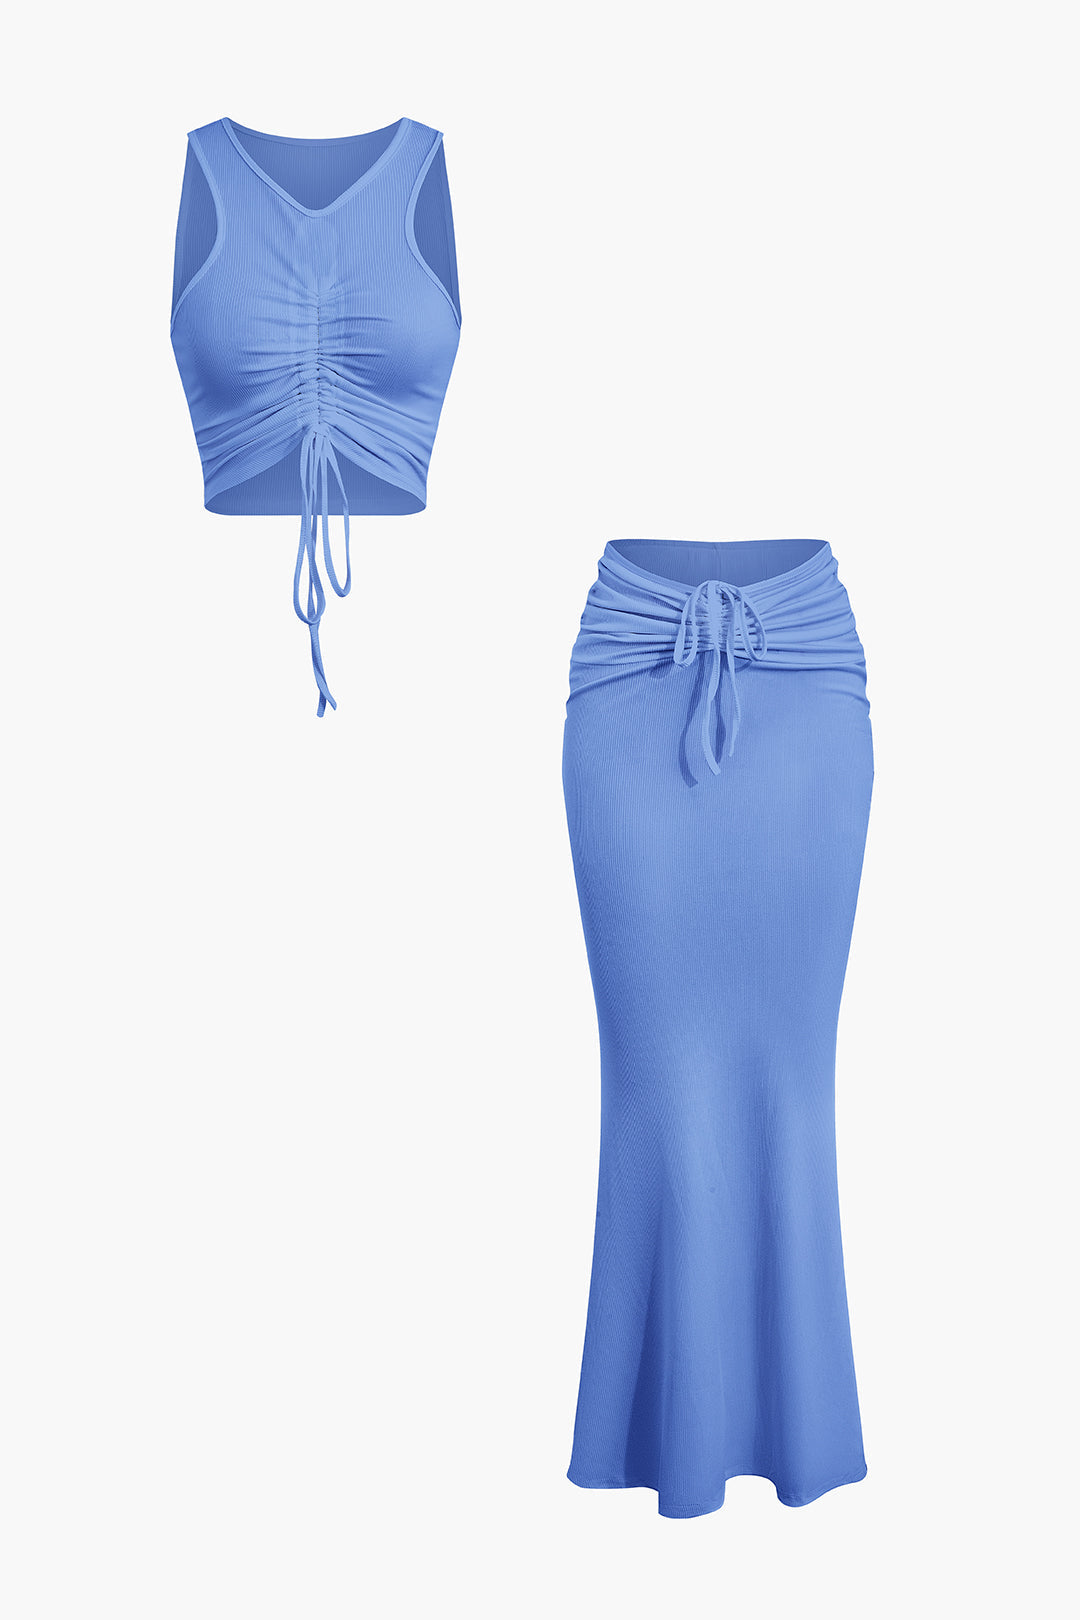 Ruched Drawstring Tank Top And Mermaid Maxi Skirt Set